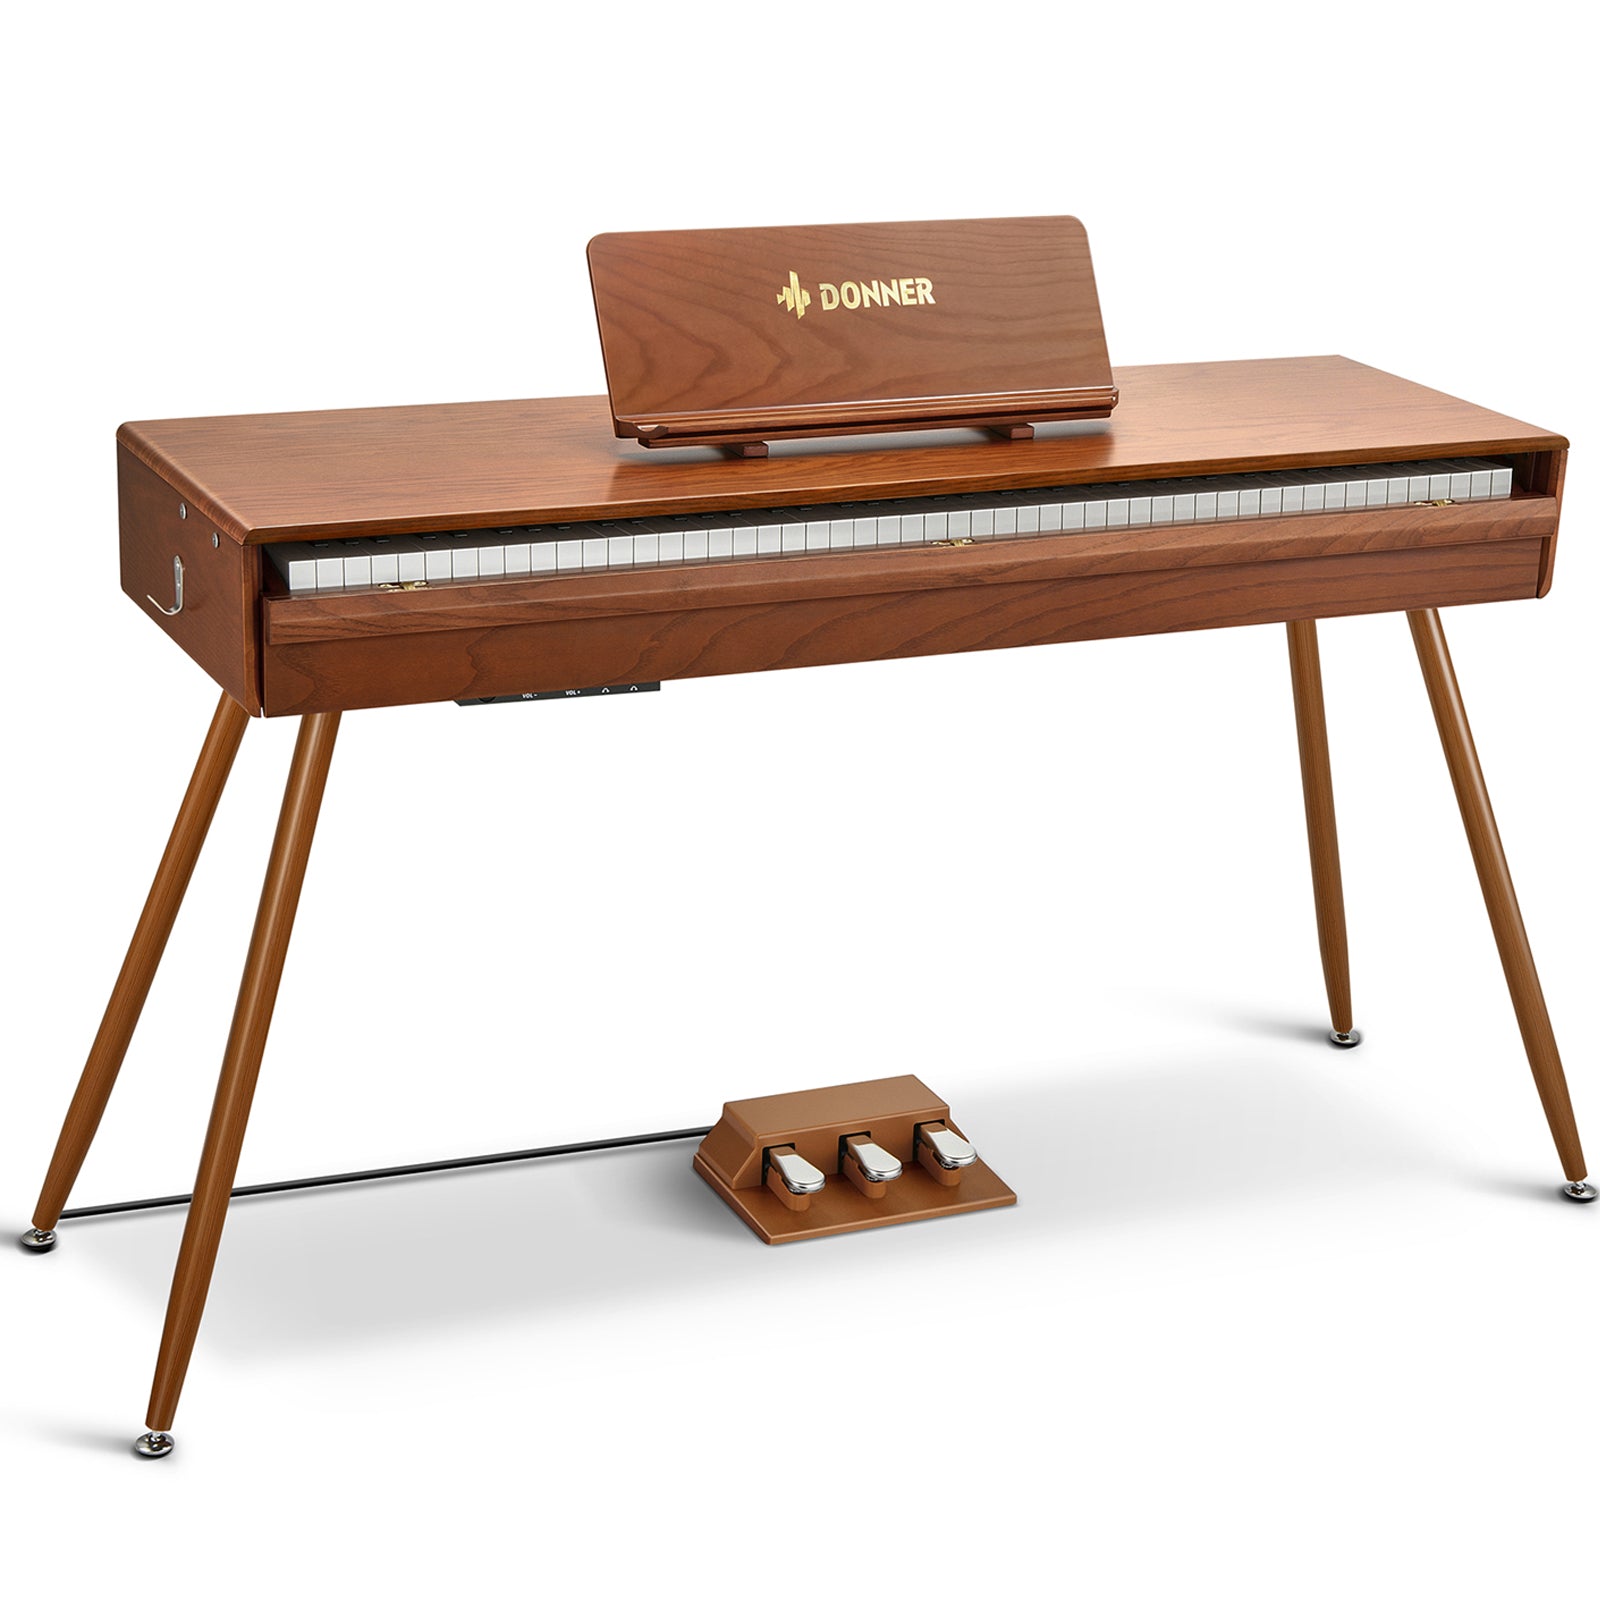 Donner DDP-80 Pro Digitalpiano Retro-Ästhetisches - DDP-80 Pro Piano von Donner